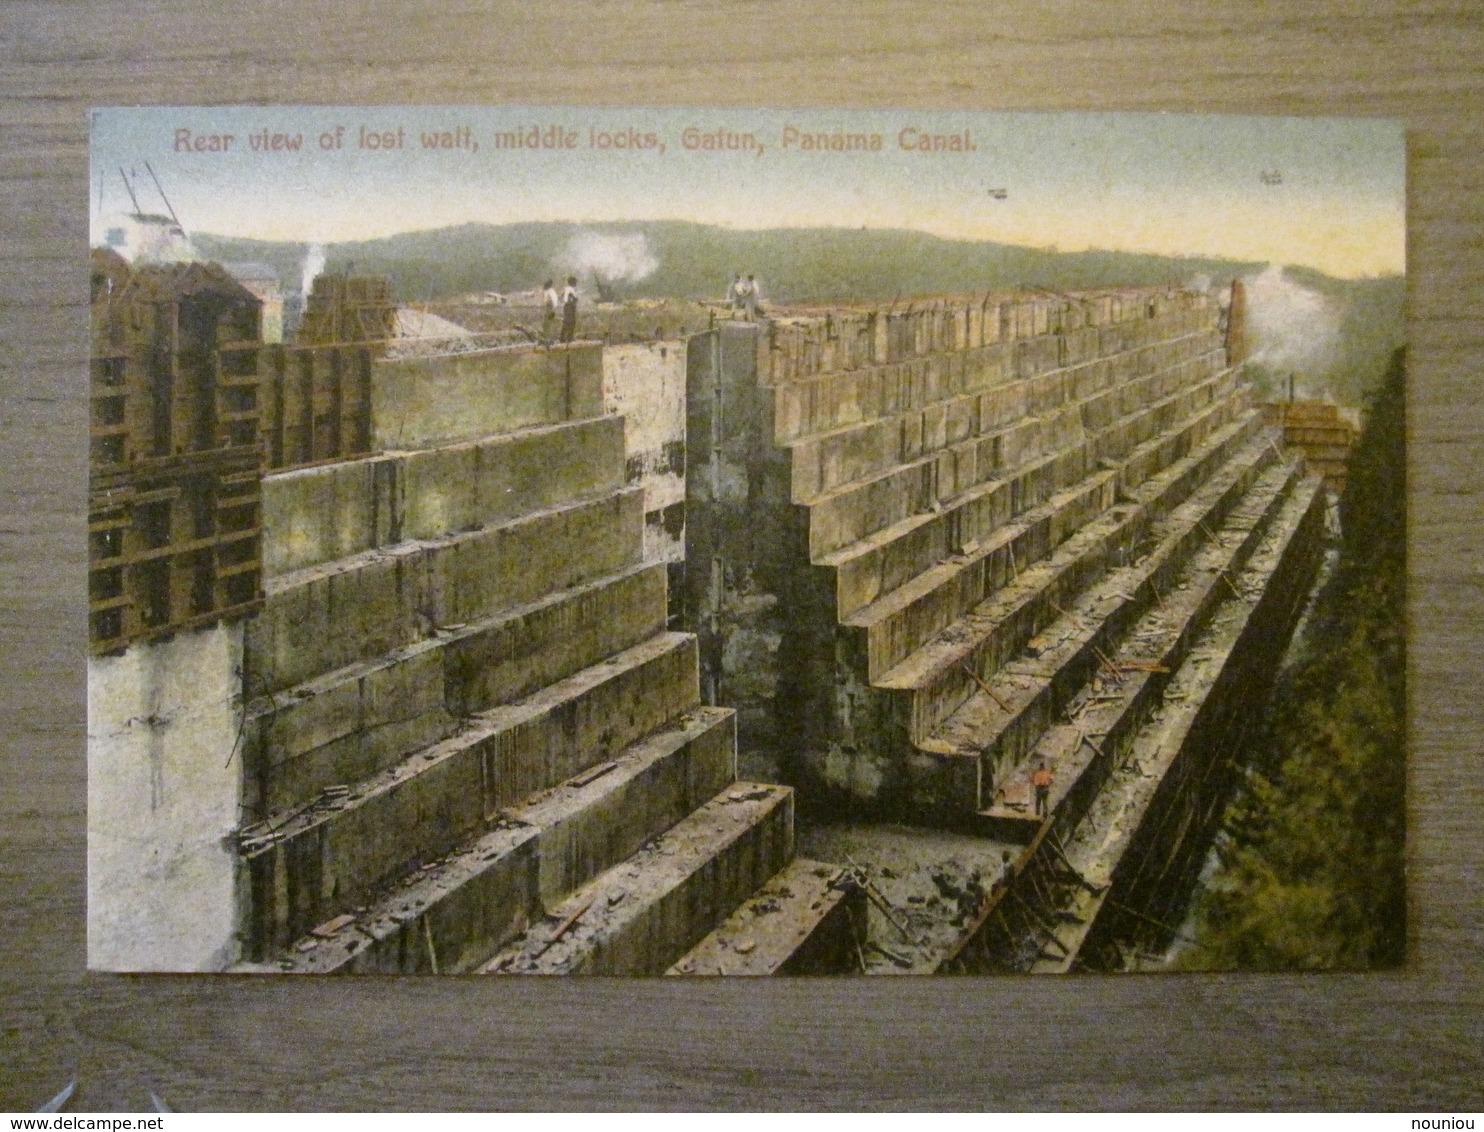 Tarjeta Postal Postcard - Panama - Rear View Of Lost Walt Middle Locks Gatun - Panama Canal - Maduro Jr. 30D - Panama